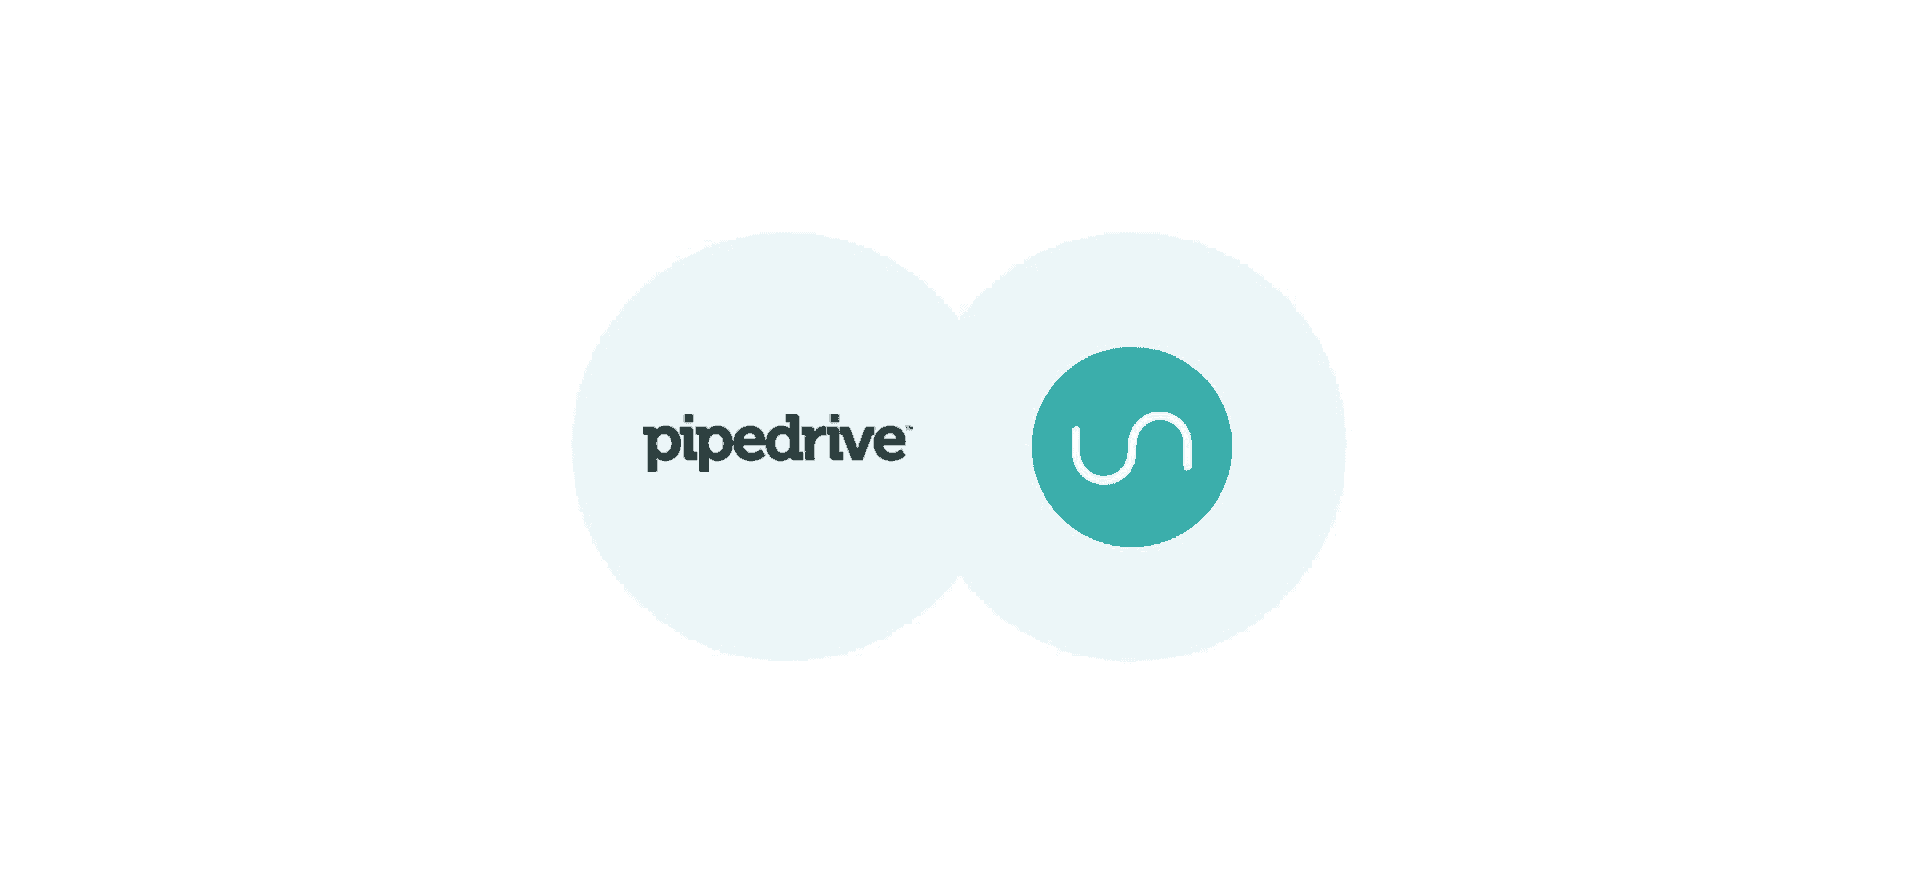 Logos for pipedrive and Unito, representing Unito's pipedrive integration